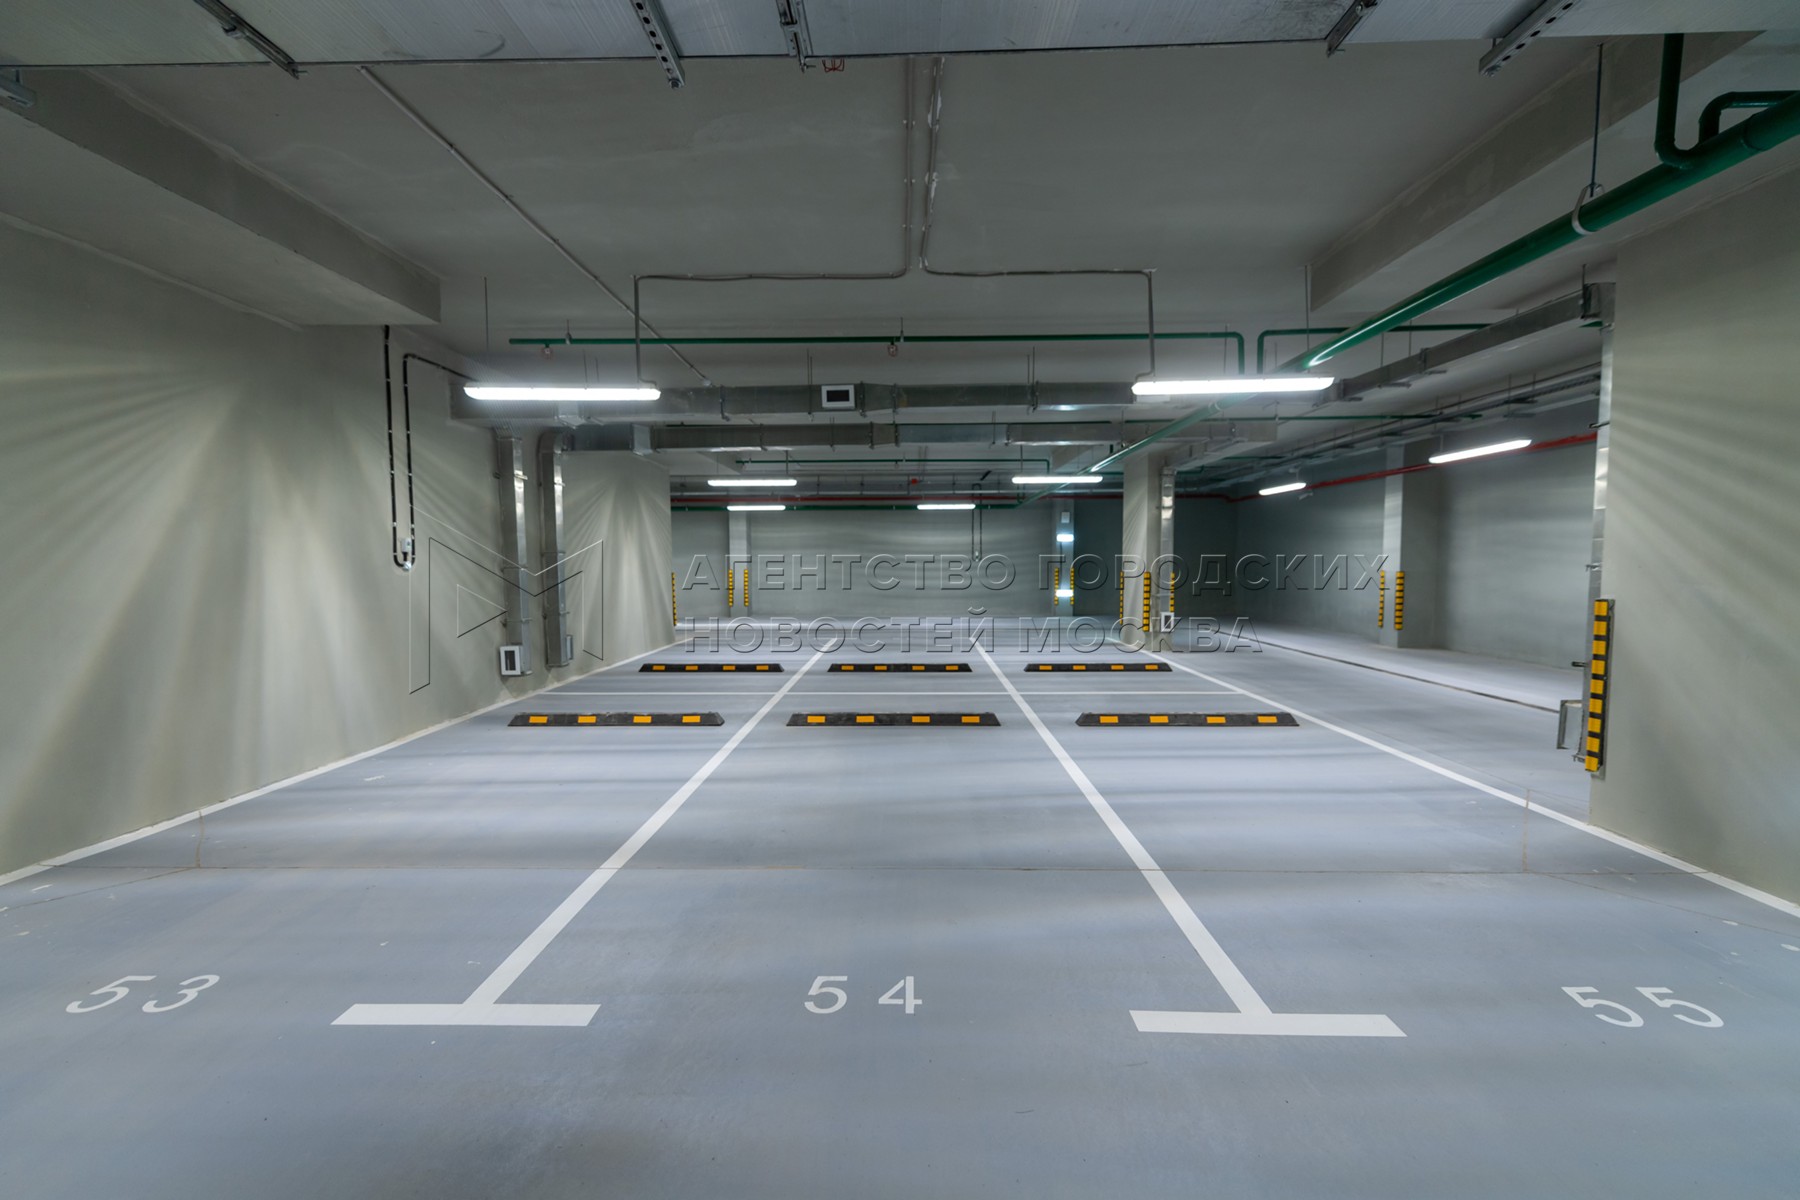 Прием машиноместа. Многоуровневая подземная парковка. Паркинг внутри. Подземные автопарковки. Подземный паркинг Москва.